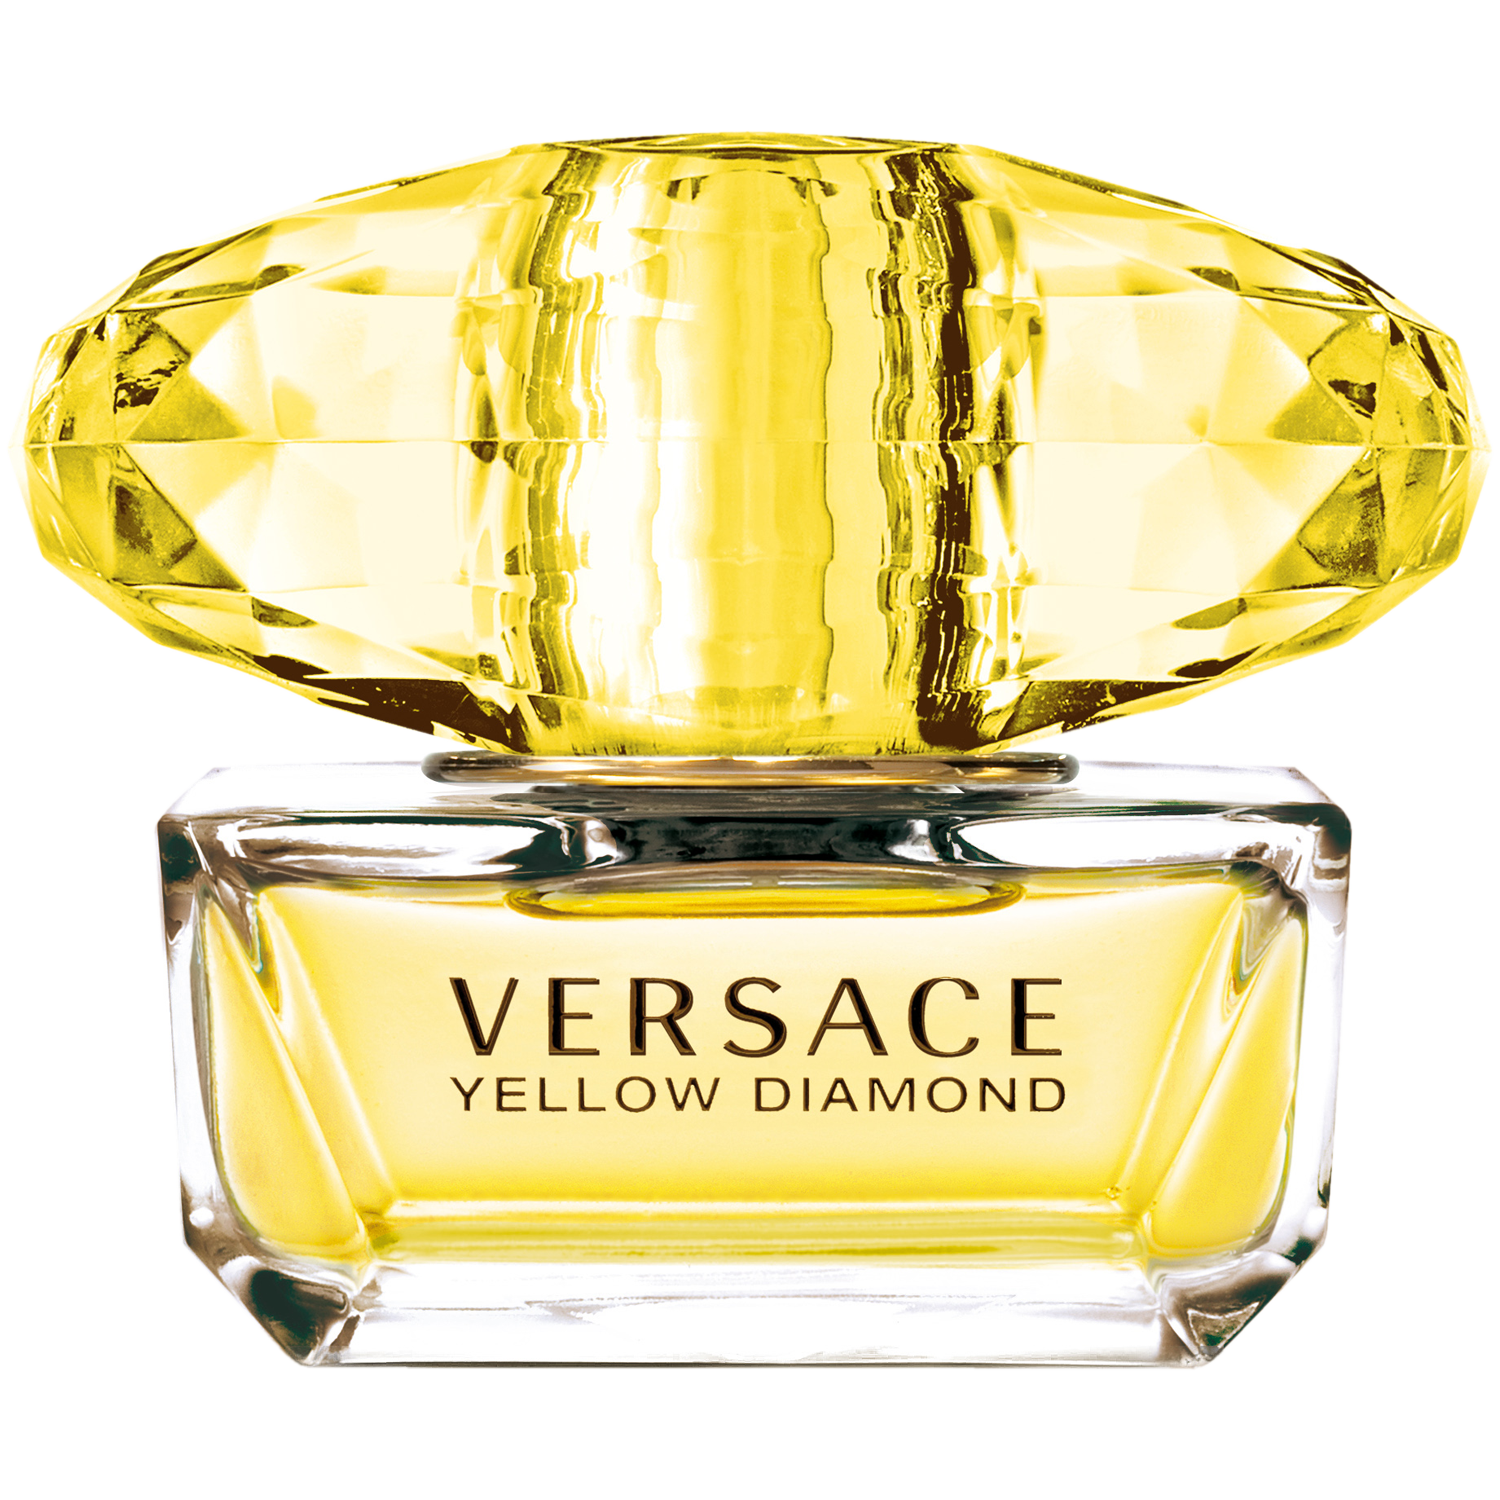 Женская туалетная вода Versace Yellow Diamond, 50 мл туалетная вода versace yellow diamond 50 мл